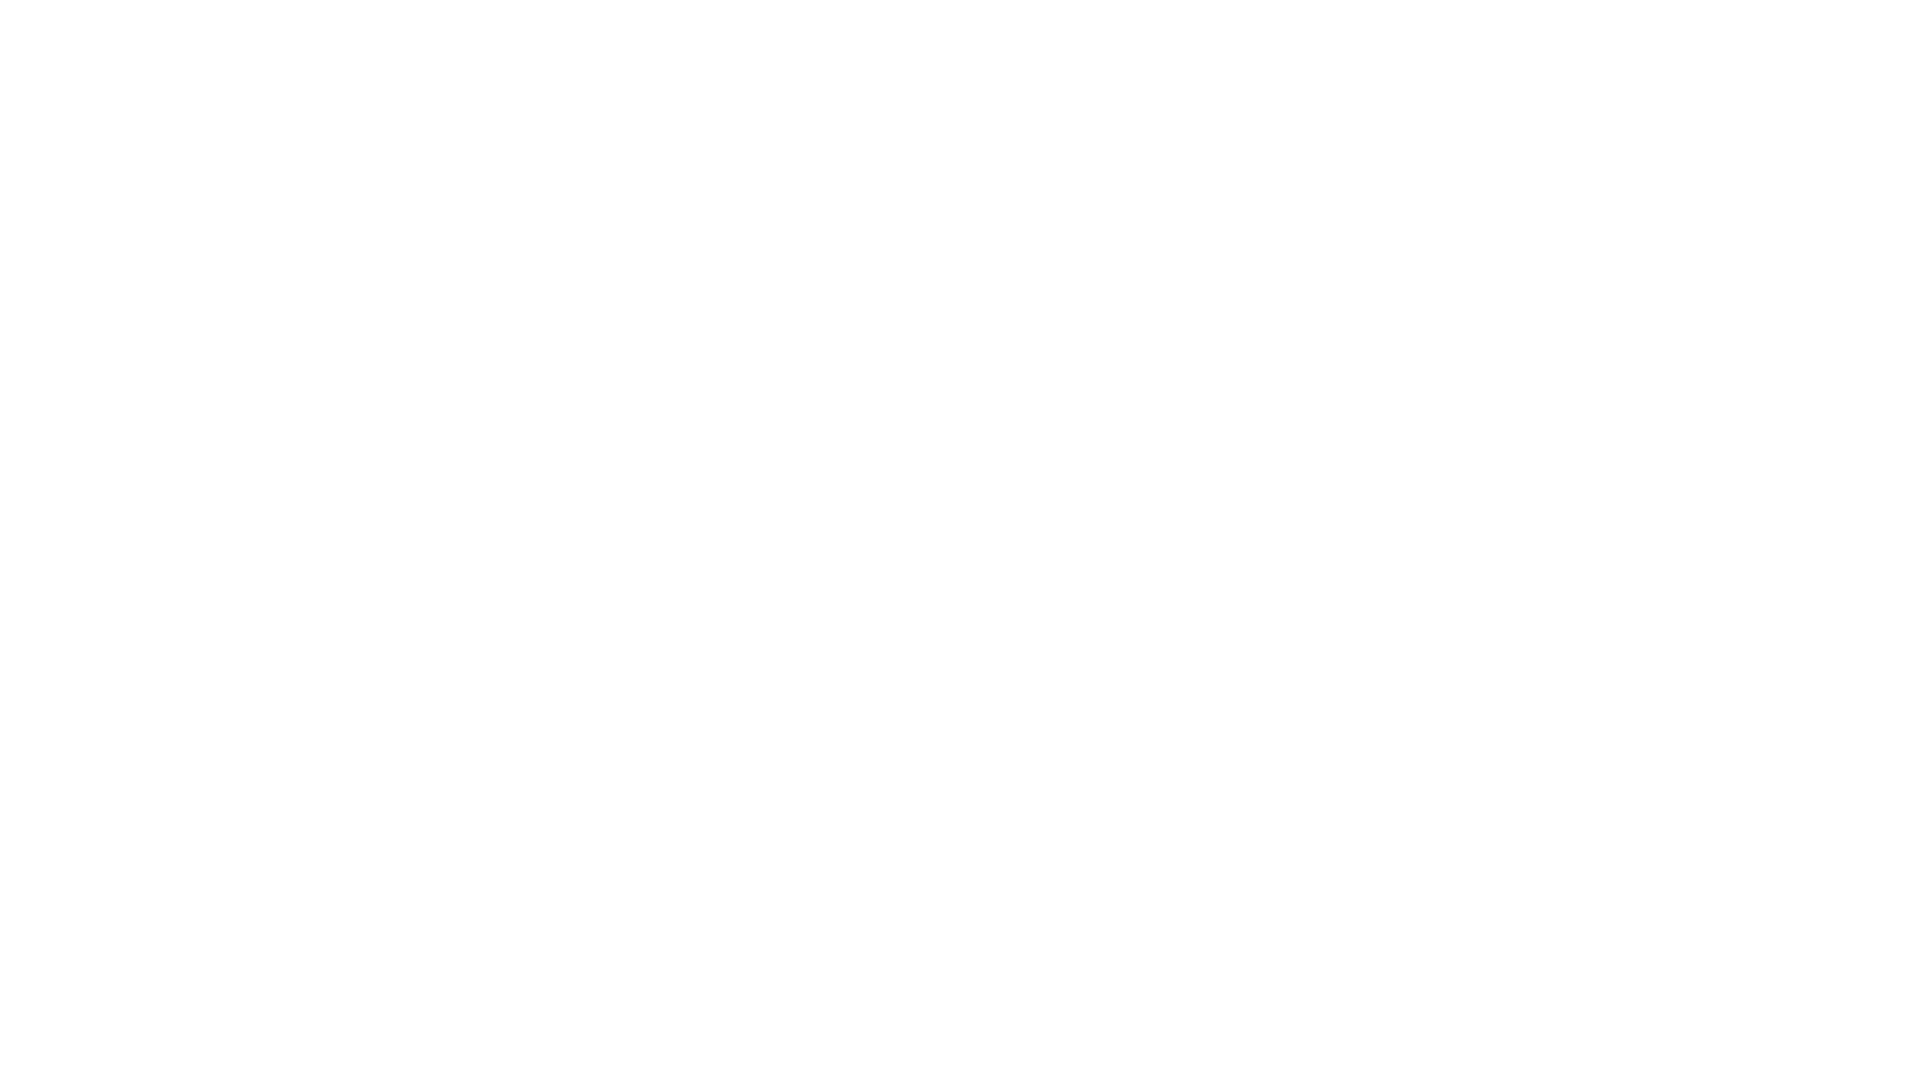 Symphony-Nova-Scotia.png